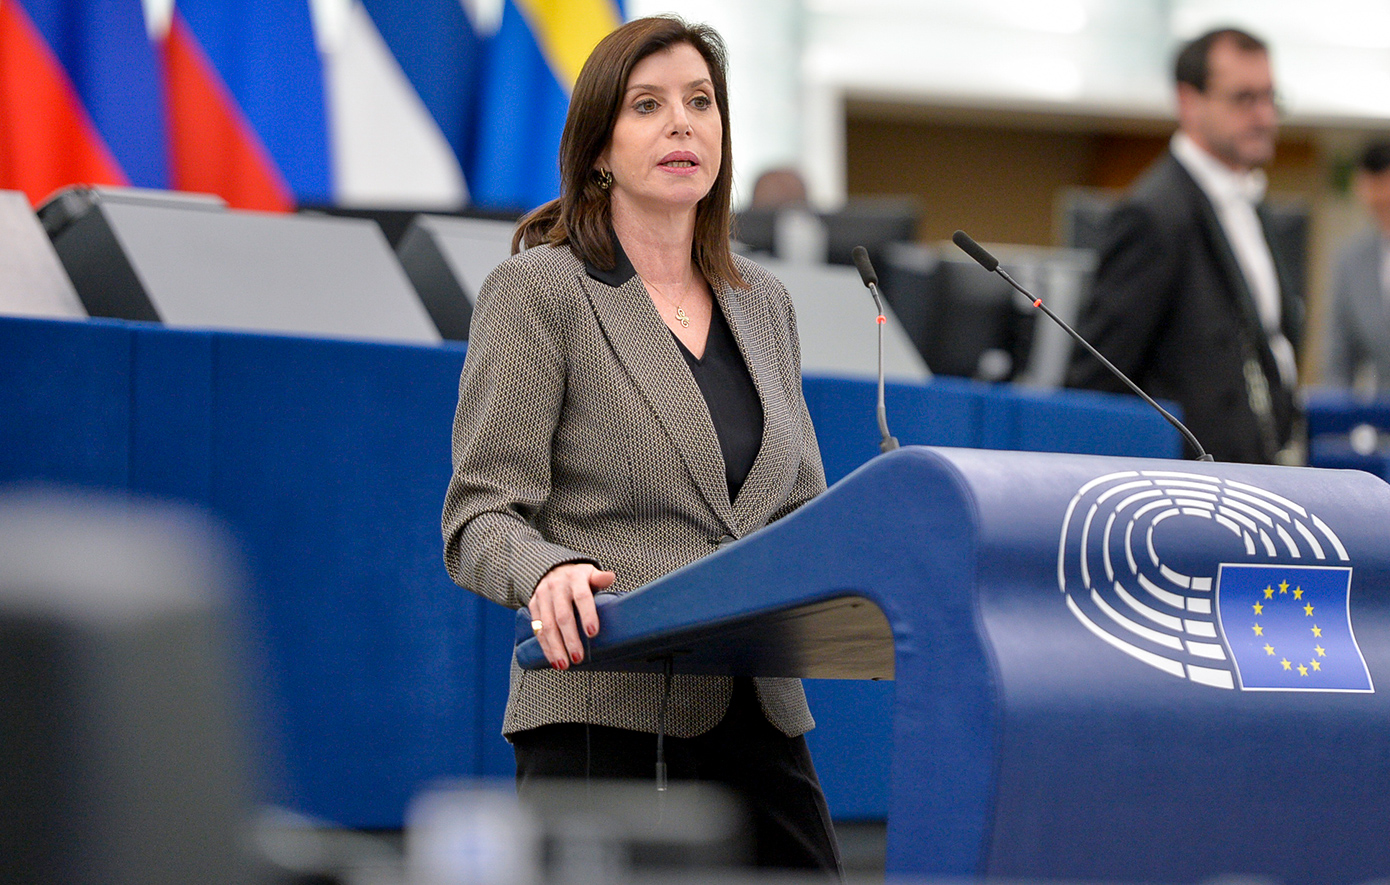 Αποσύρεται η Άννα Μισέλ Ασημακοπούλου από υποψήφια στις ευρωεκλογές με τη Νέα Δημοκρατία